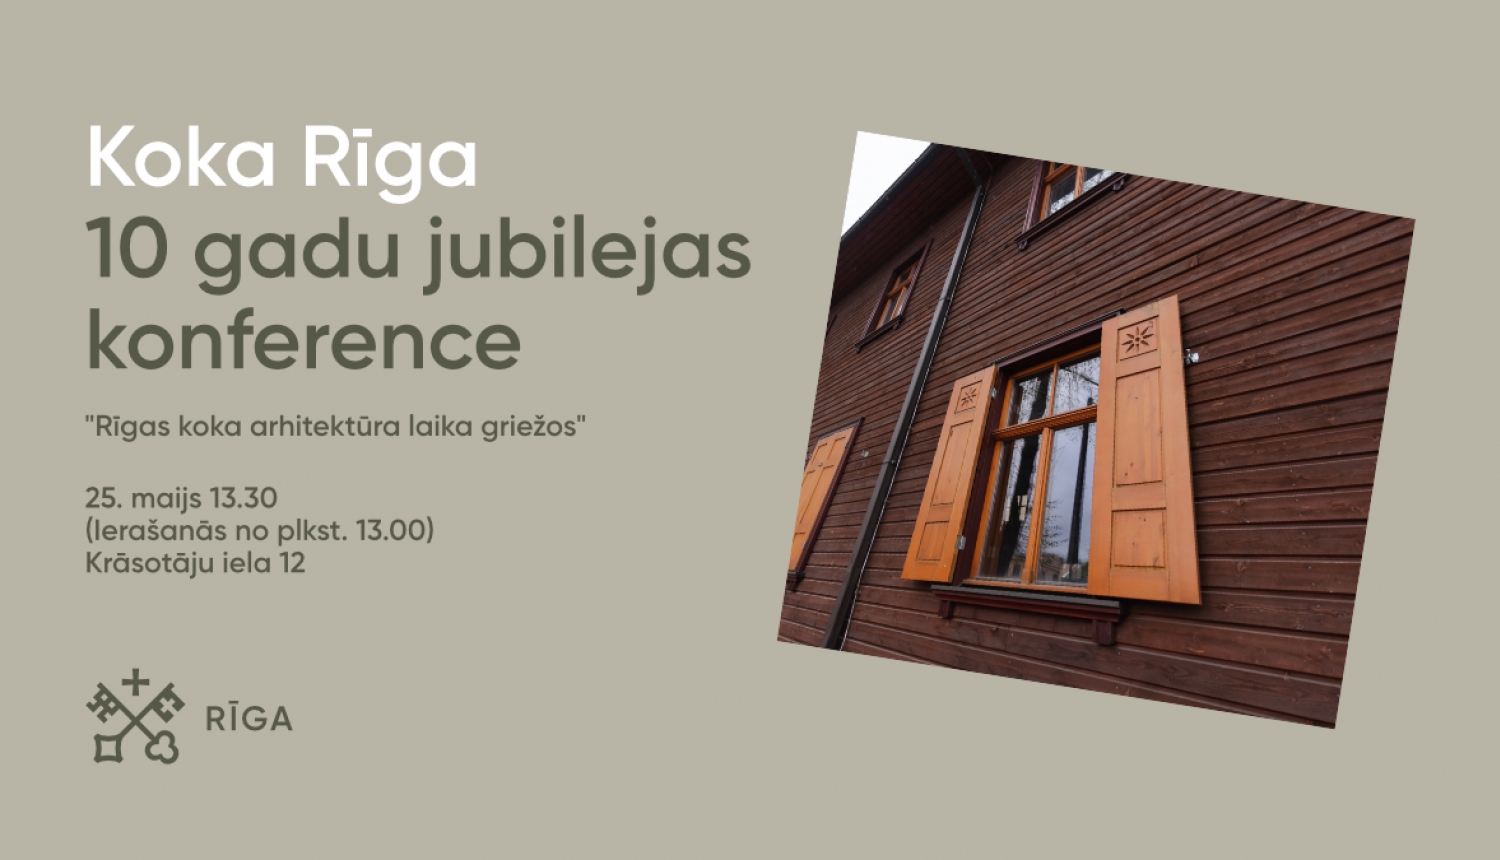 Koka Rīgas konference